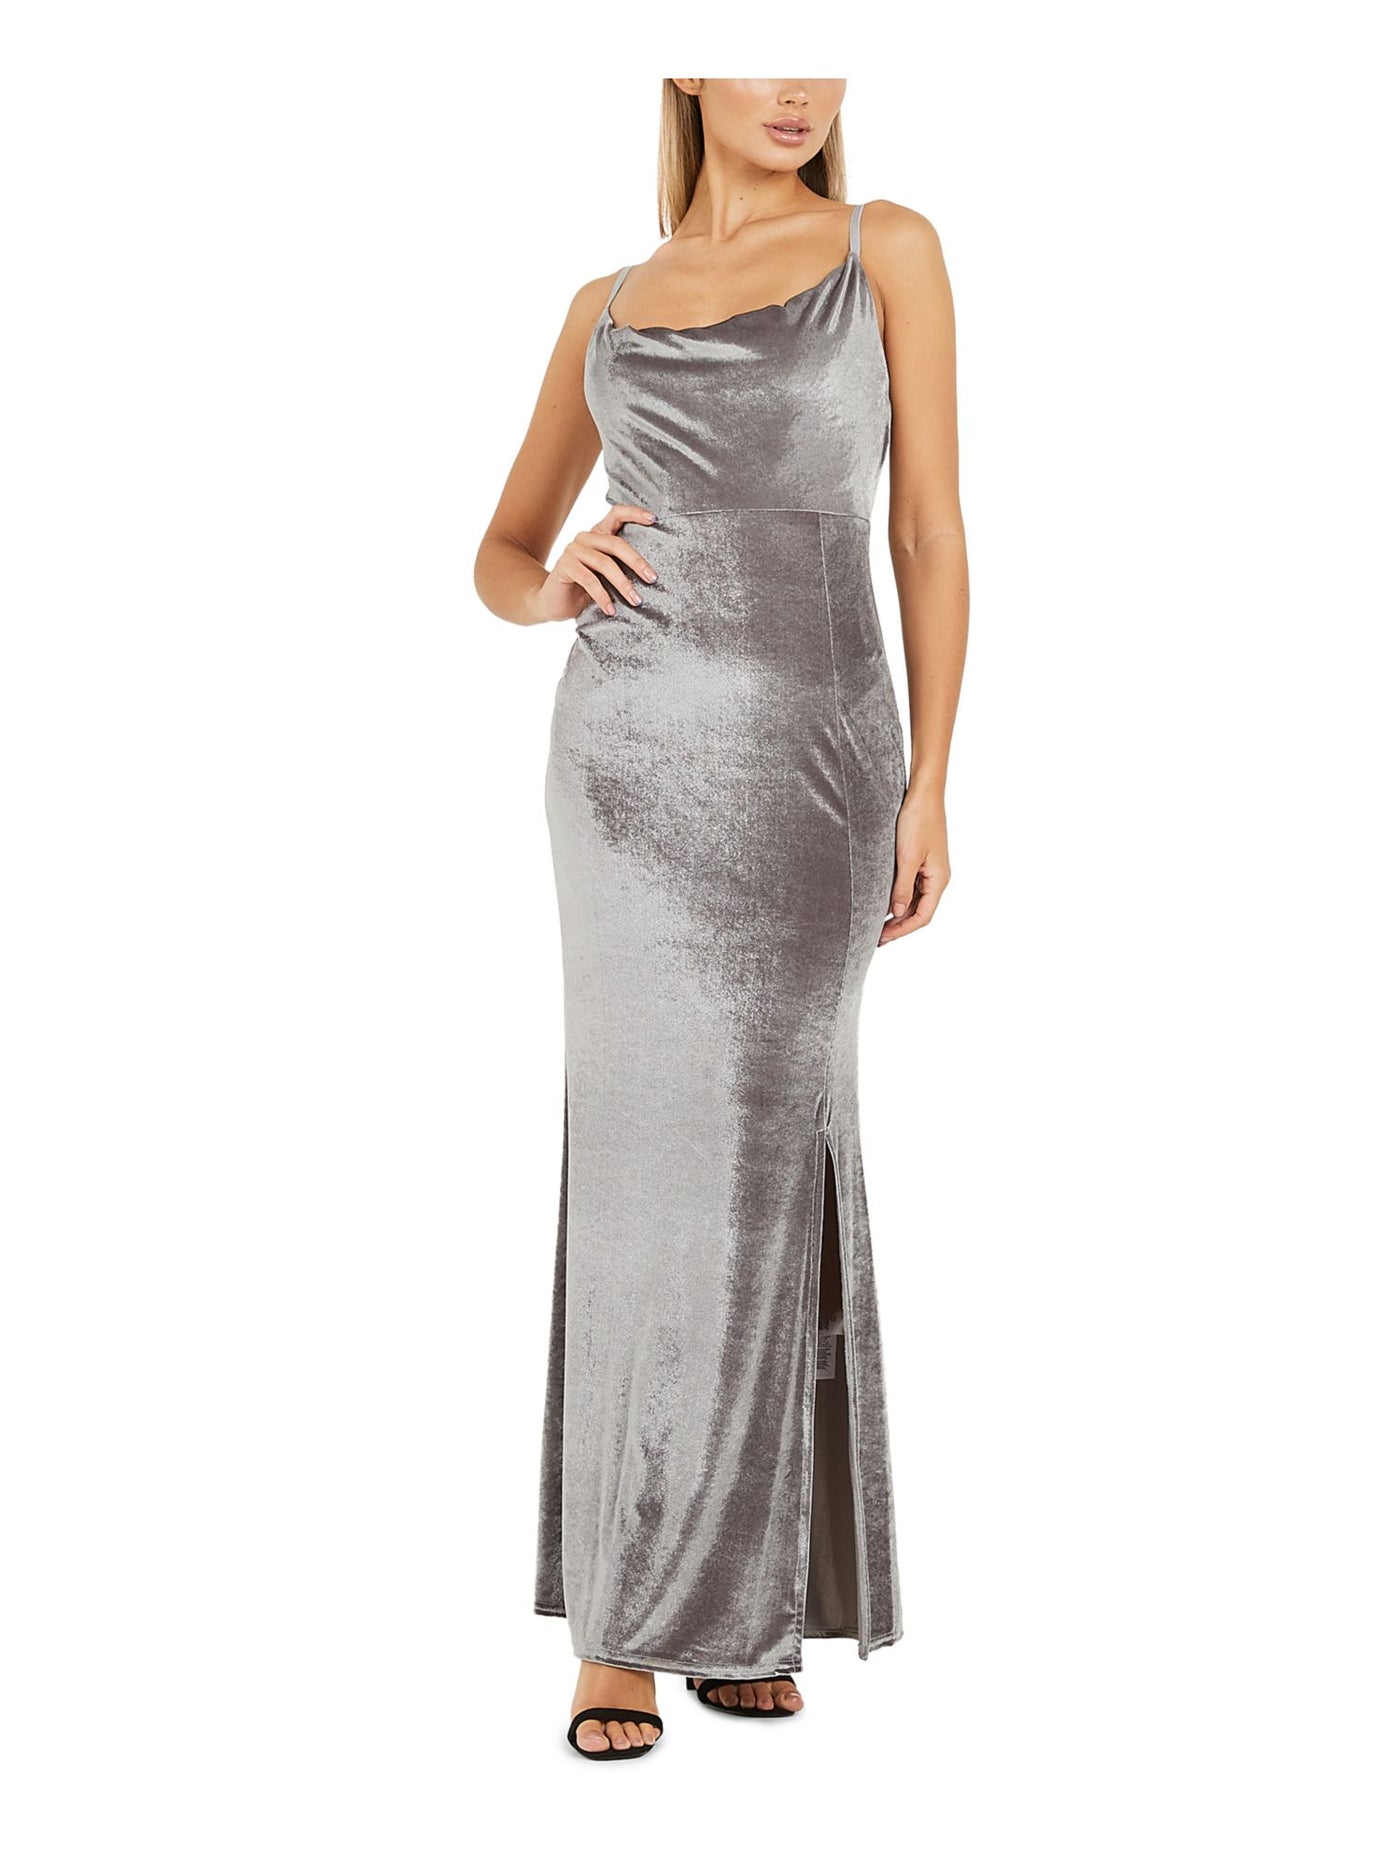 QUIZ Womens Gray Velvet Spaghetti Strap Cowl Neck Full-Length Evening Body Con Dress 2